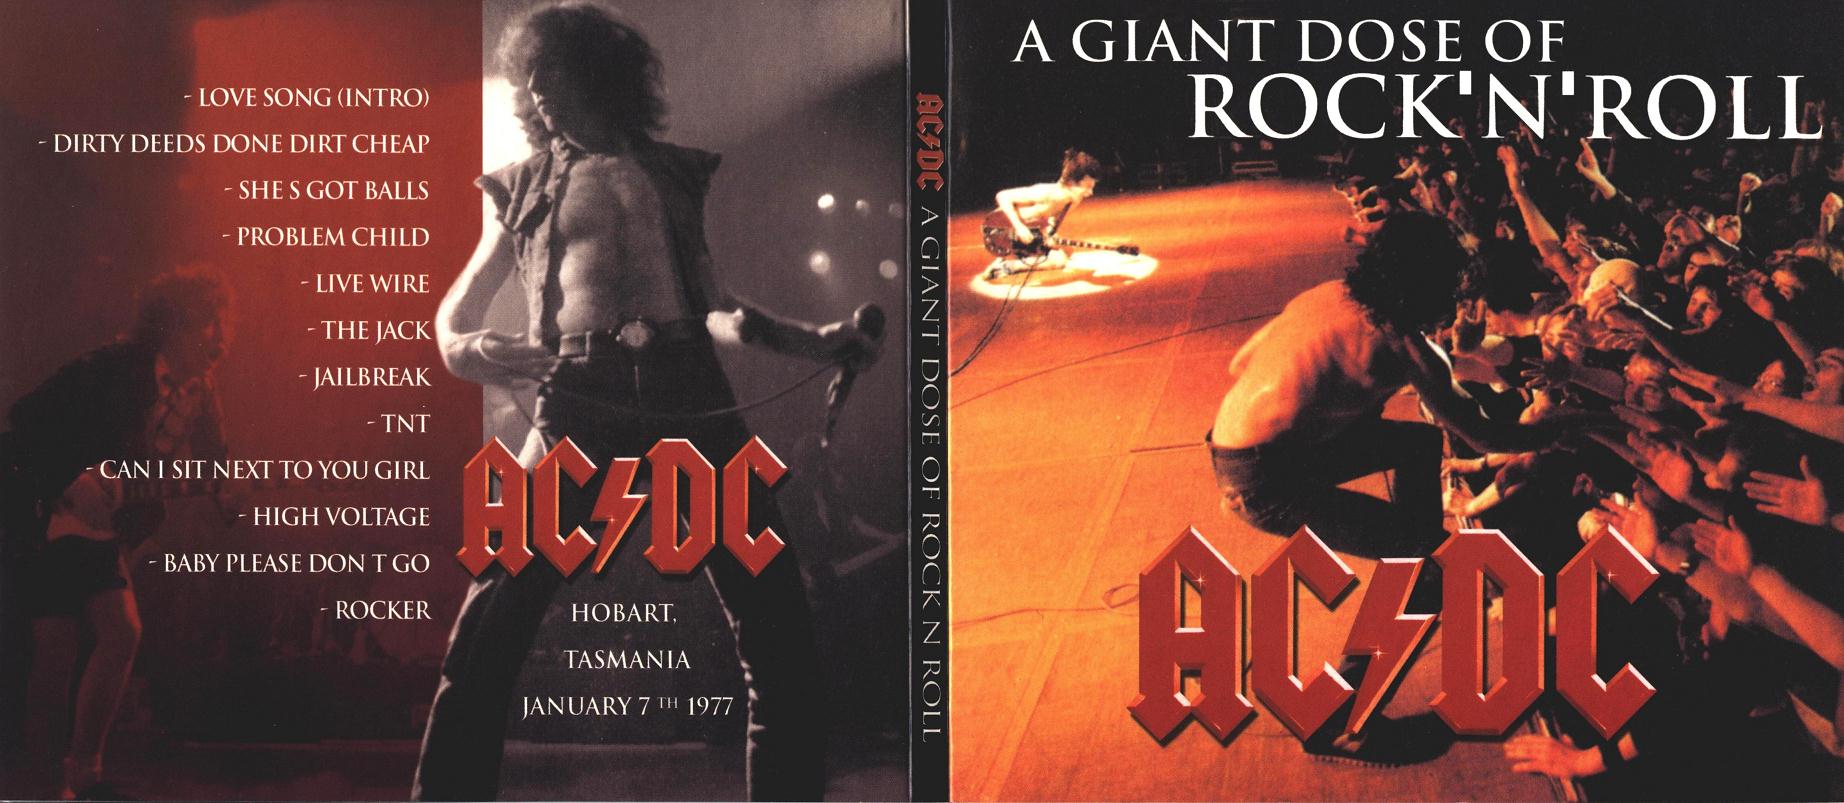 1977-01-07-A_Giant_Dose_of_Rock_n_Roll-digipack